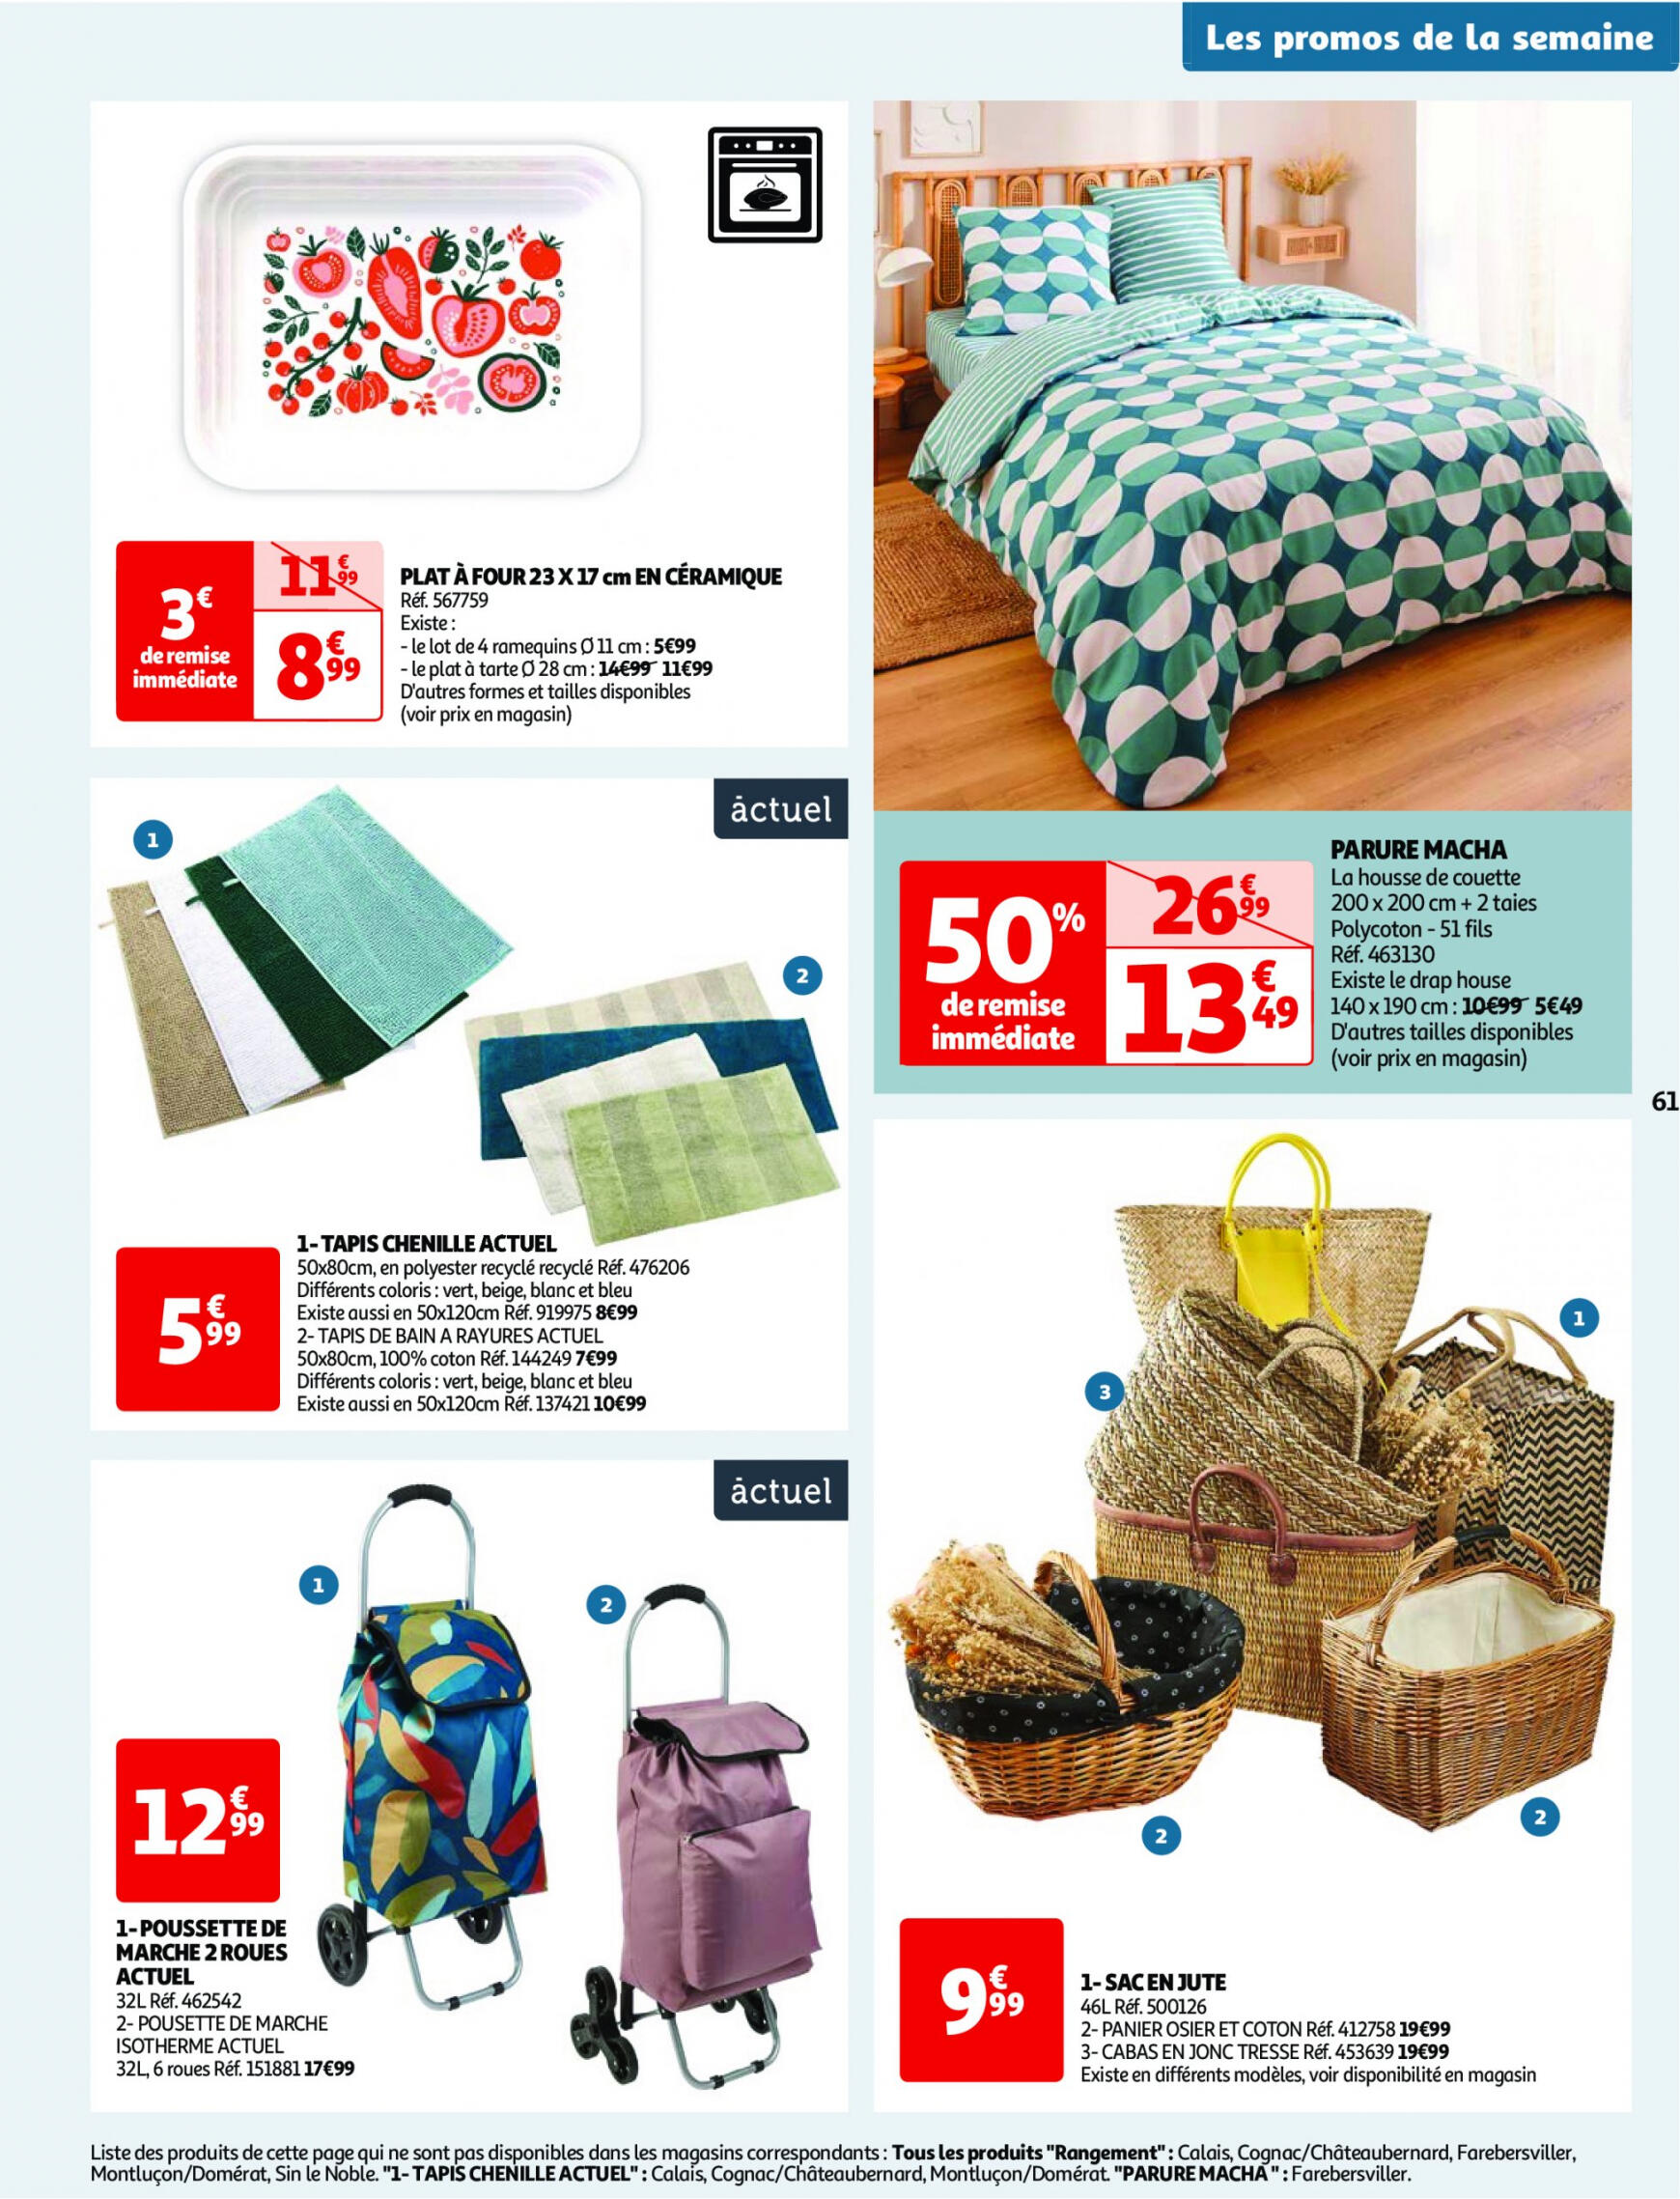 auchan - Prospectus Auchan actuel 30.04. - 06.05. - page: 61